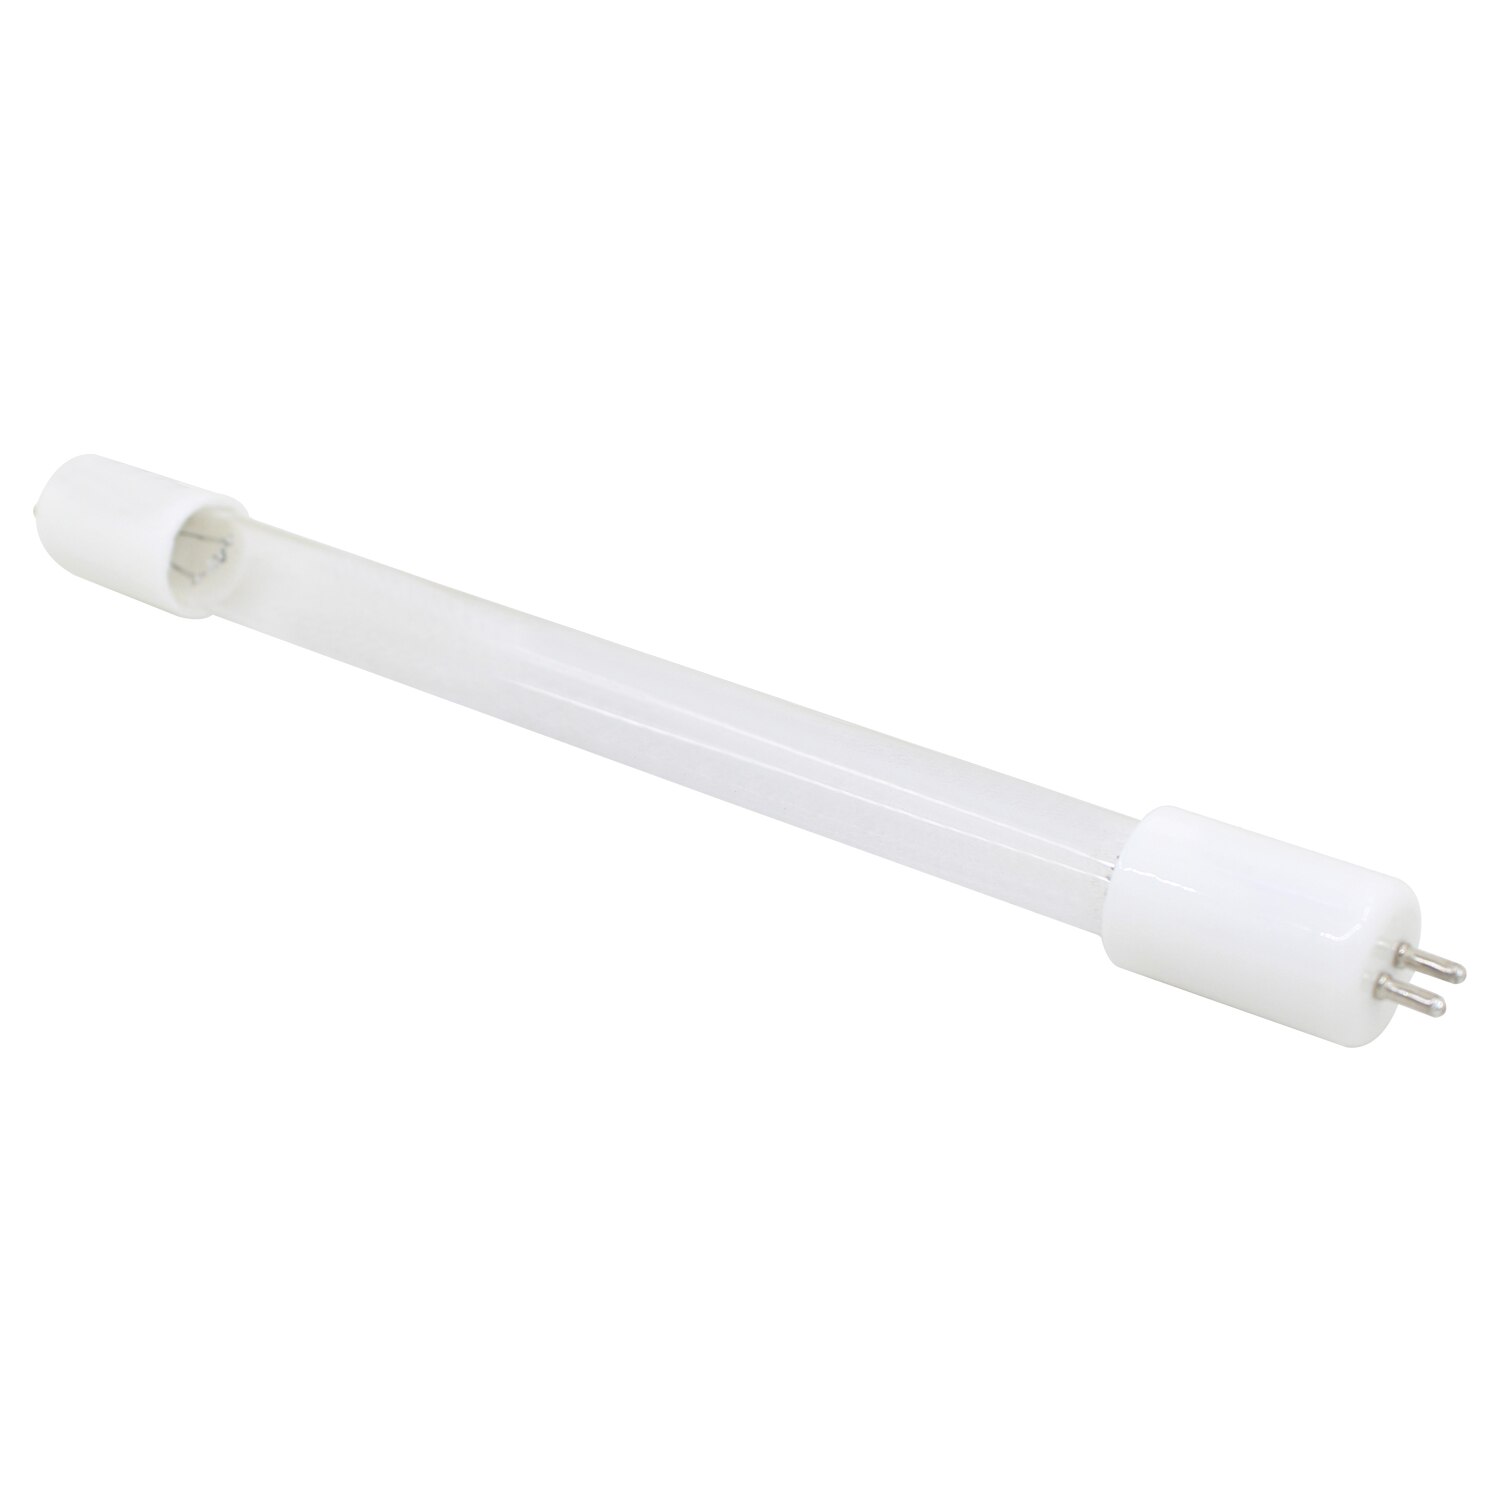 UV 라이트 램프 오존 소독 uv 램프 가정용 상업용 살균 램프 석영 튜브 UV 램프 교체, 1 개